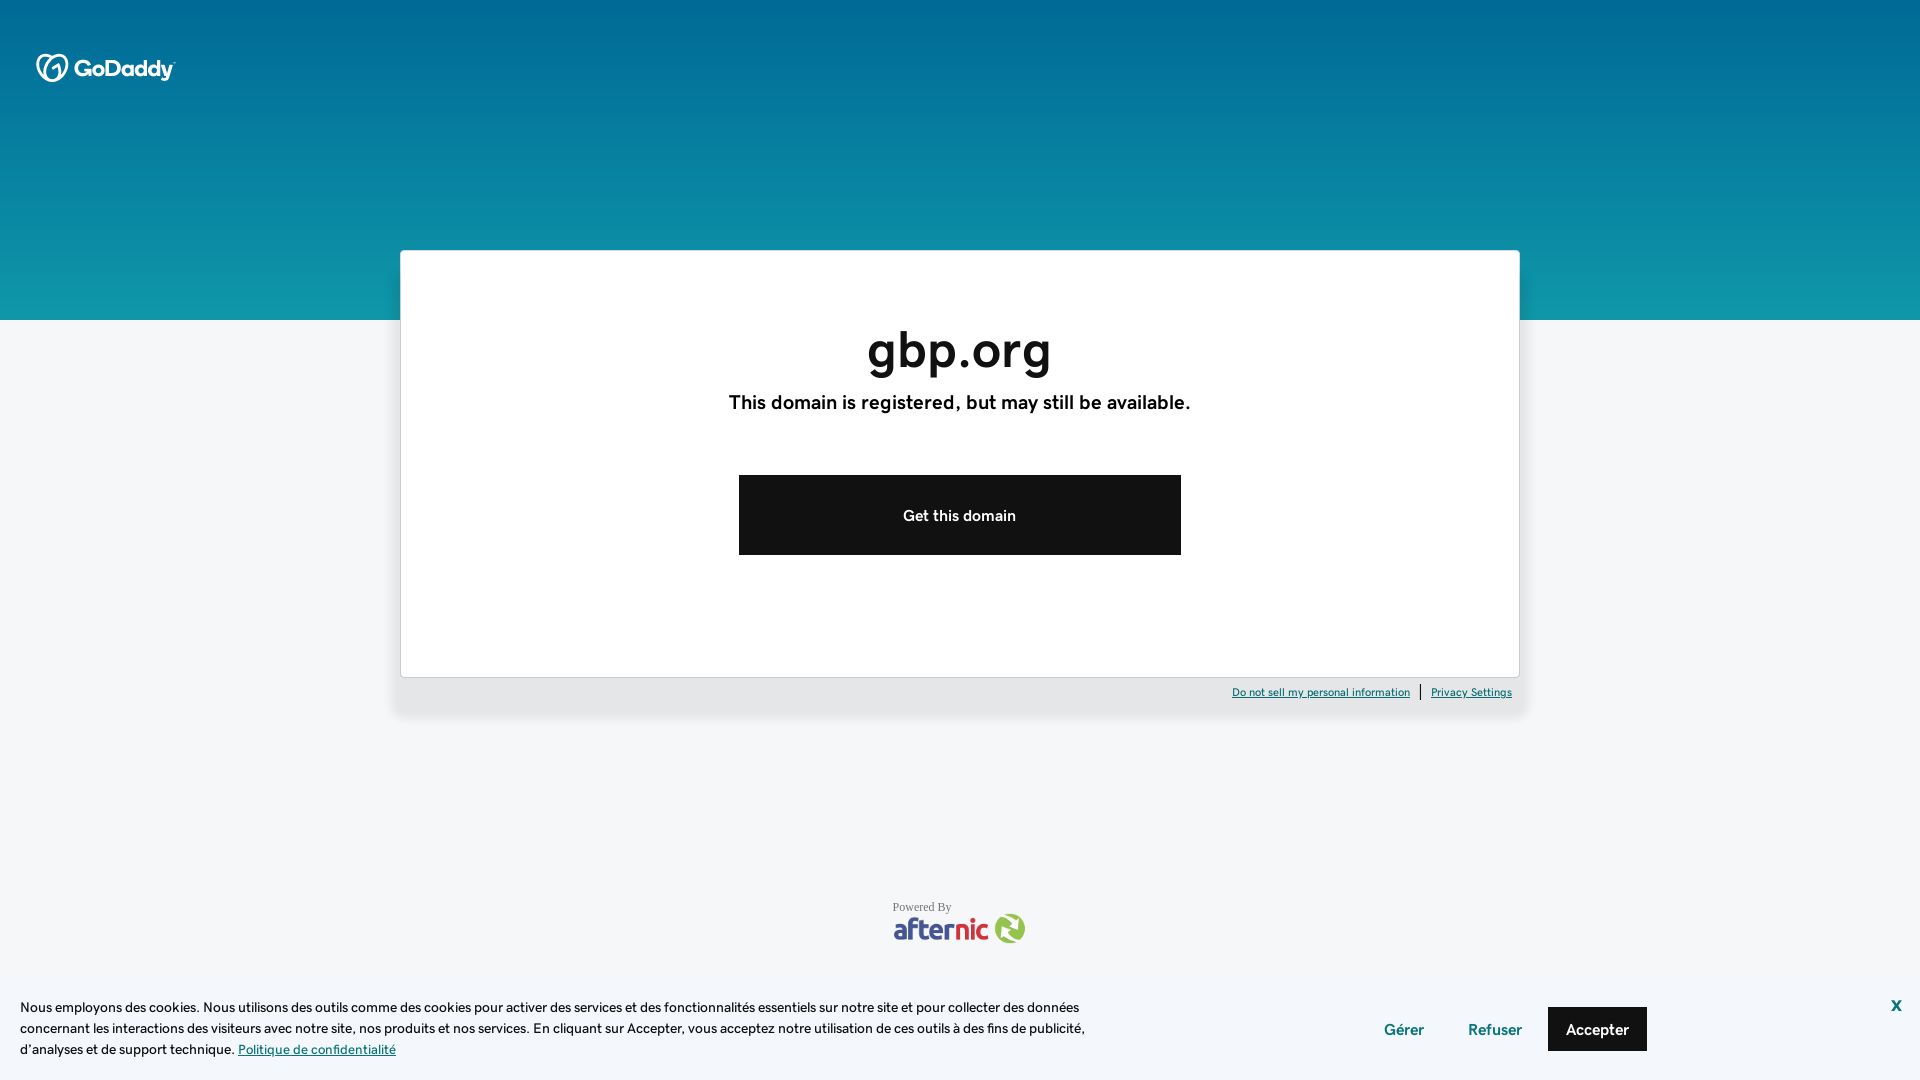 网站状态 gbp.org 是  在线的